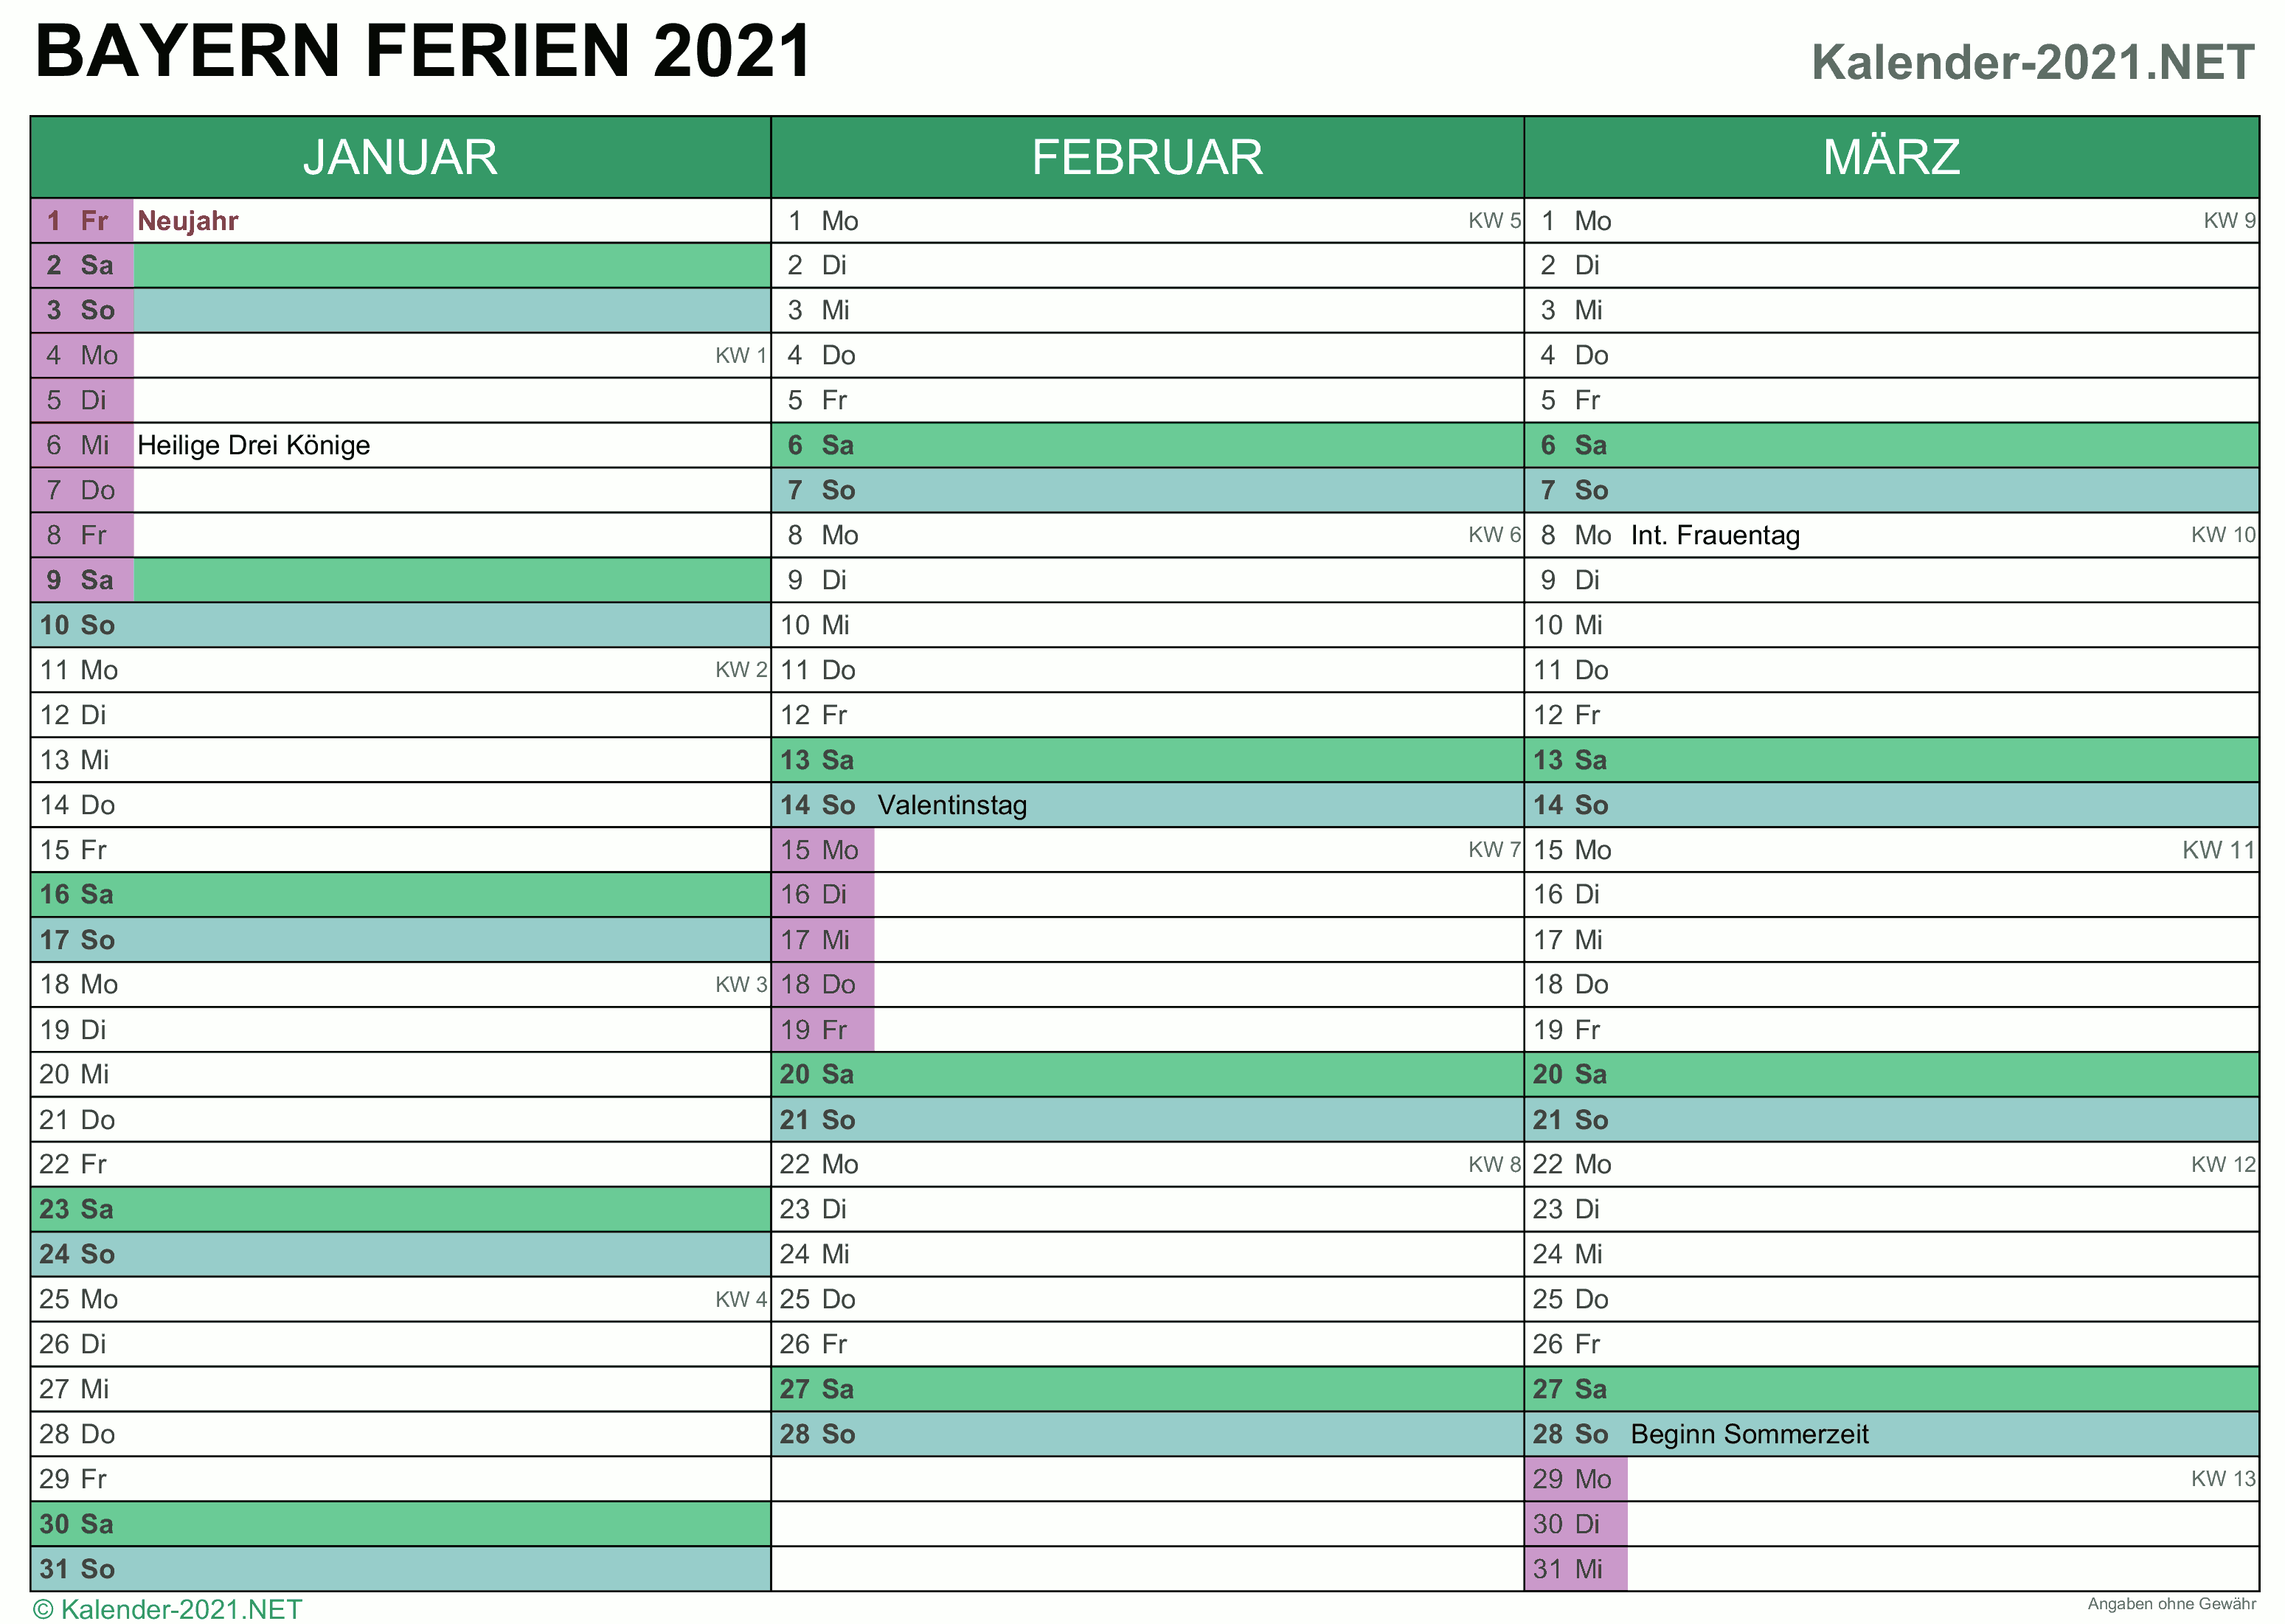 FERIEN Bayern 2021 - Ferienkalender & Übersicht